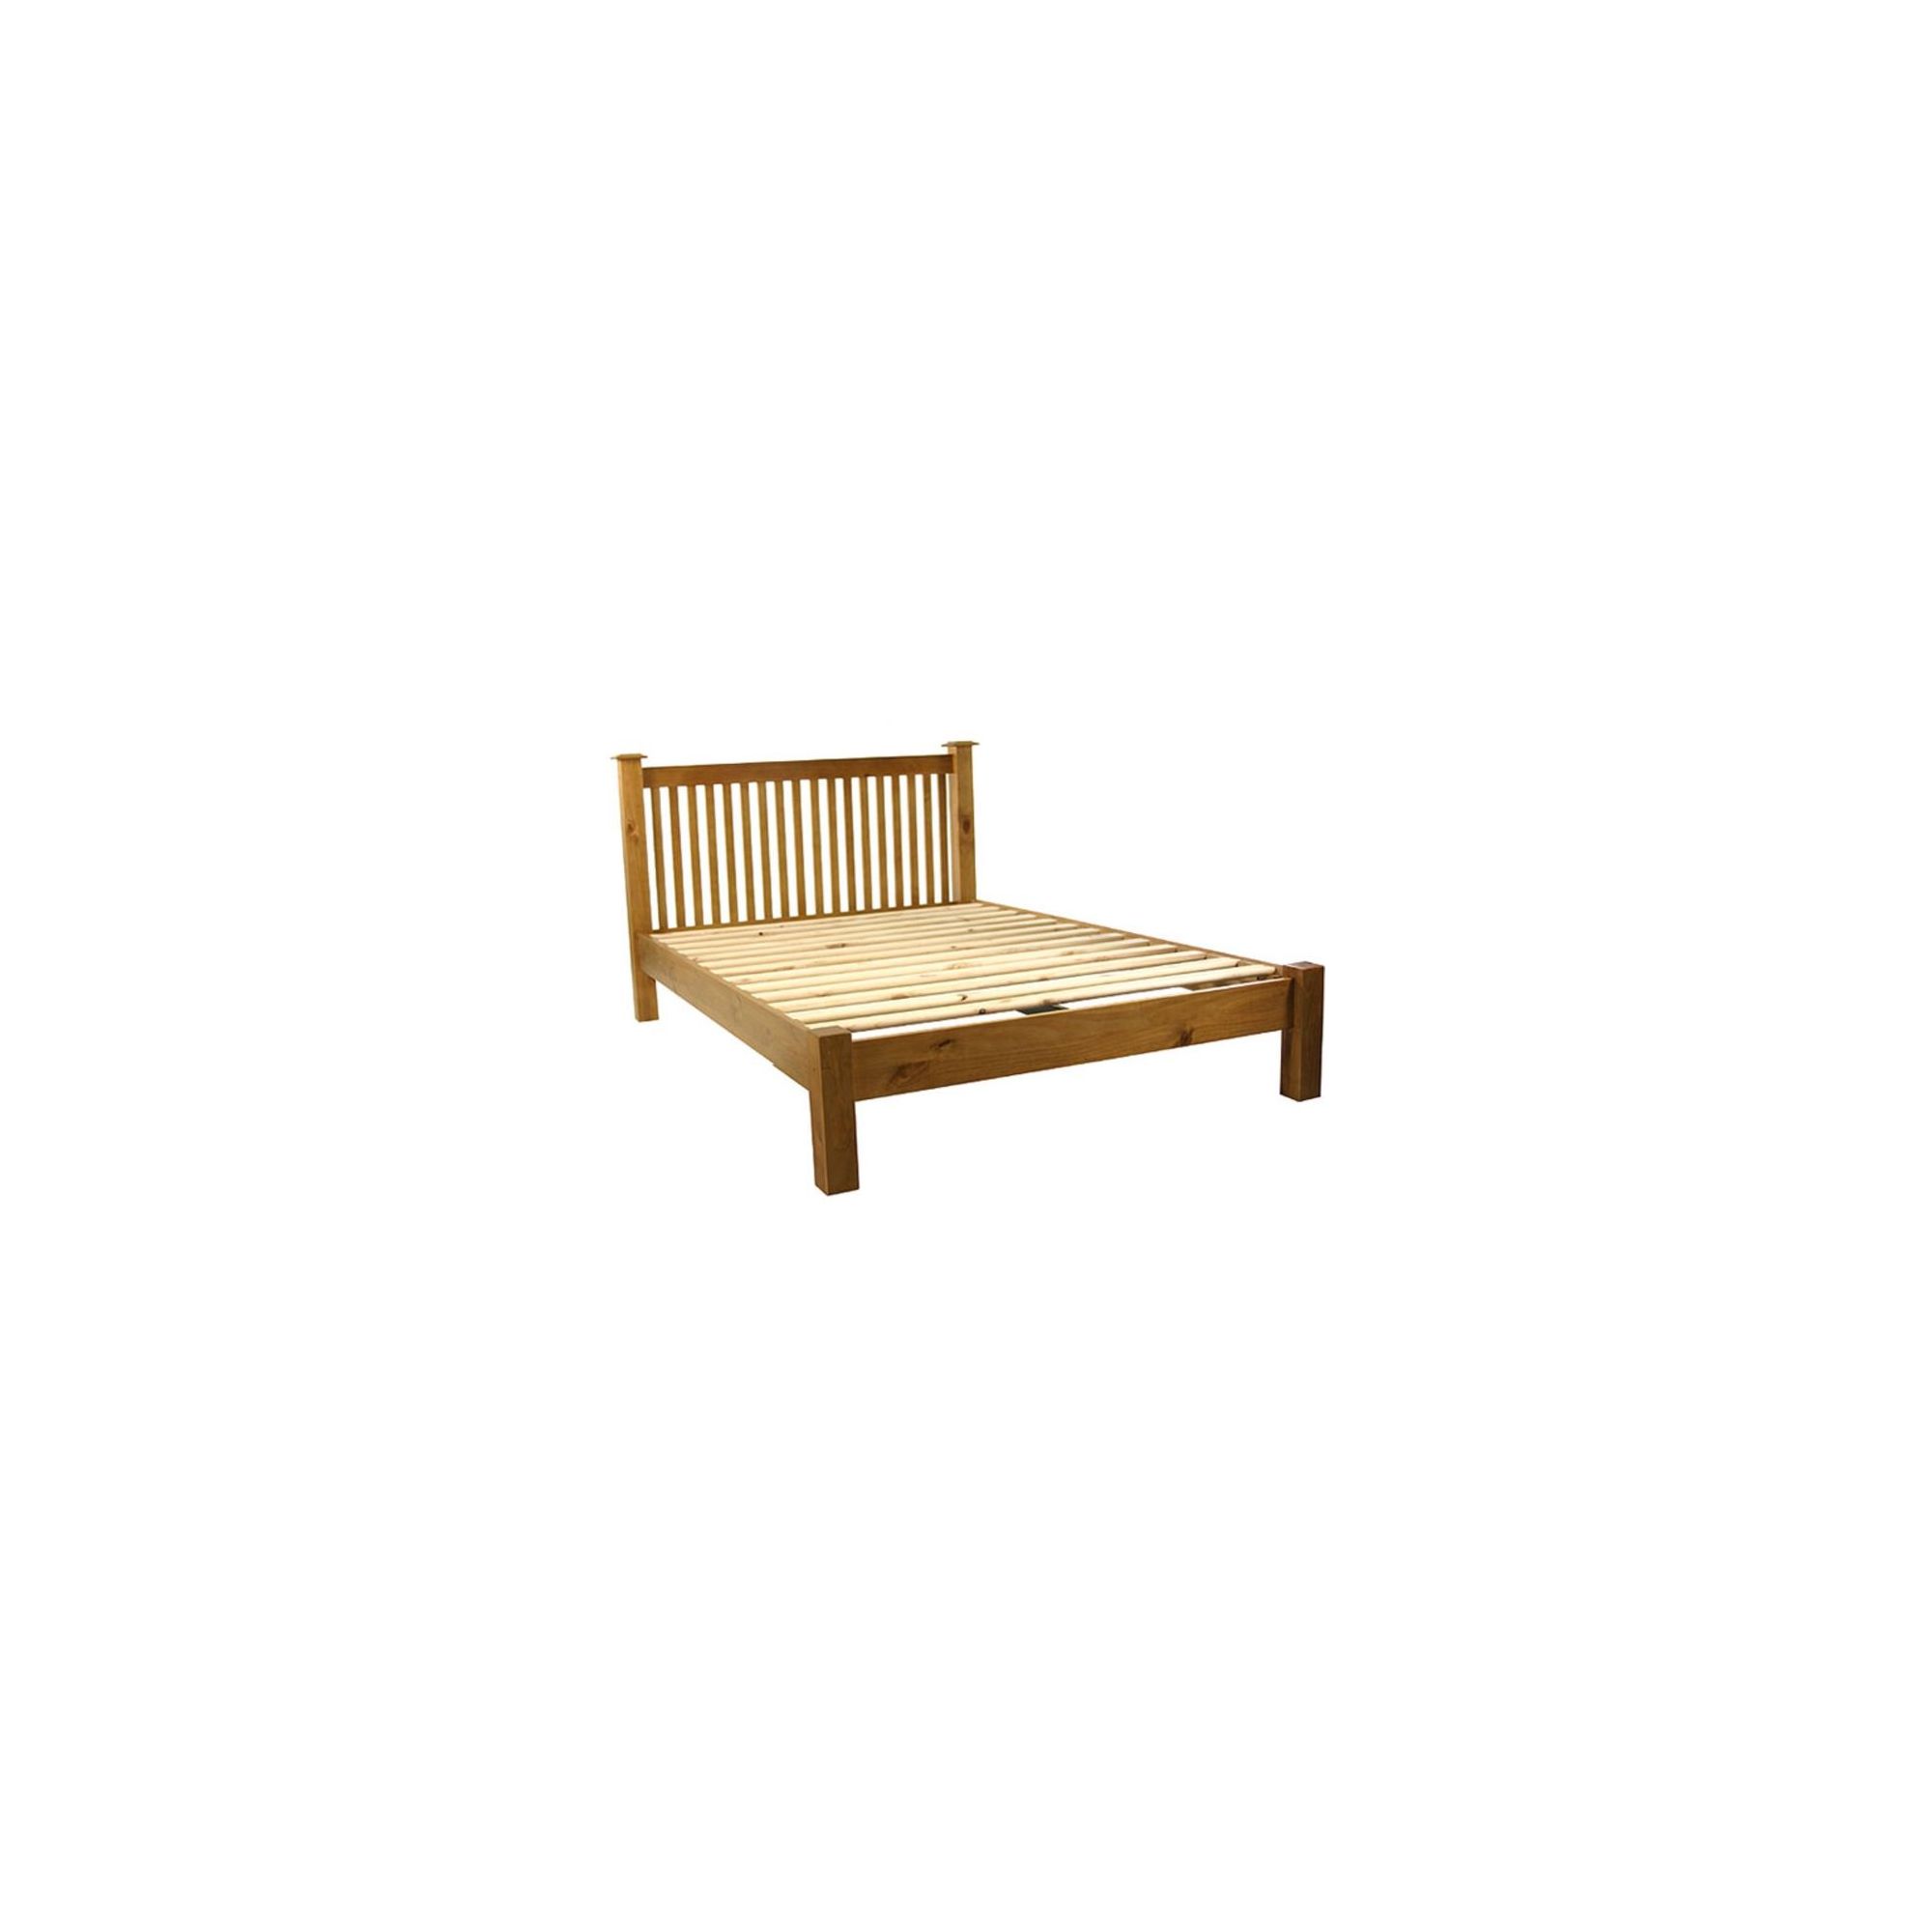 Kelburn Furniture Pine Low Foot End Bed Frame - King at Tesco Direct